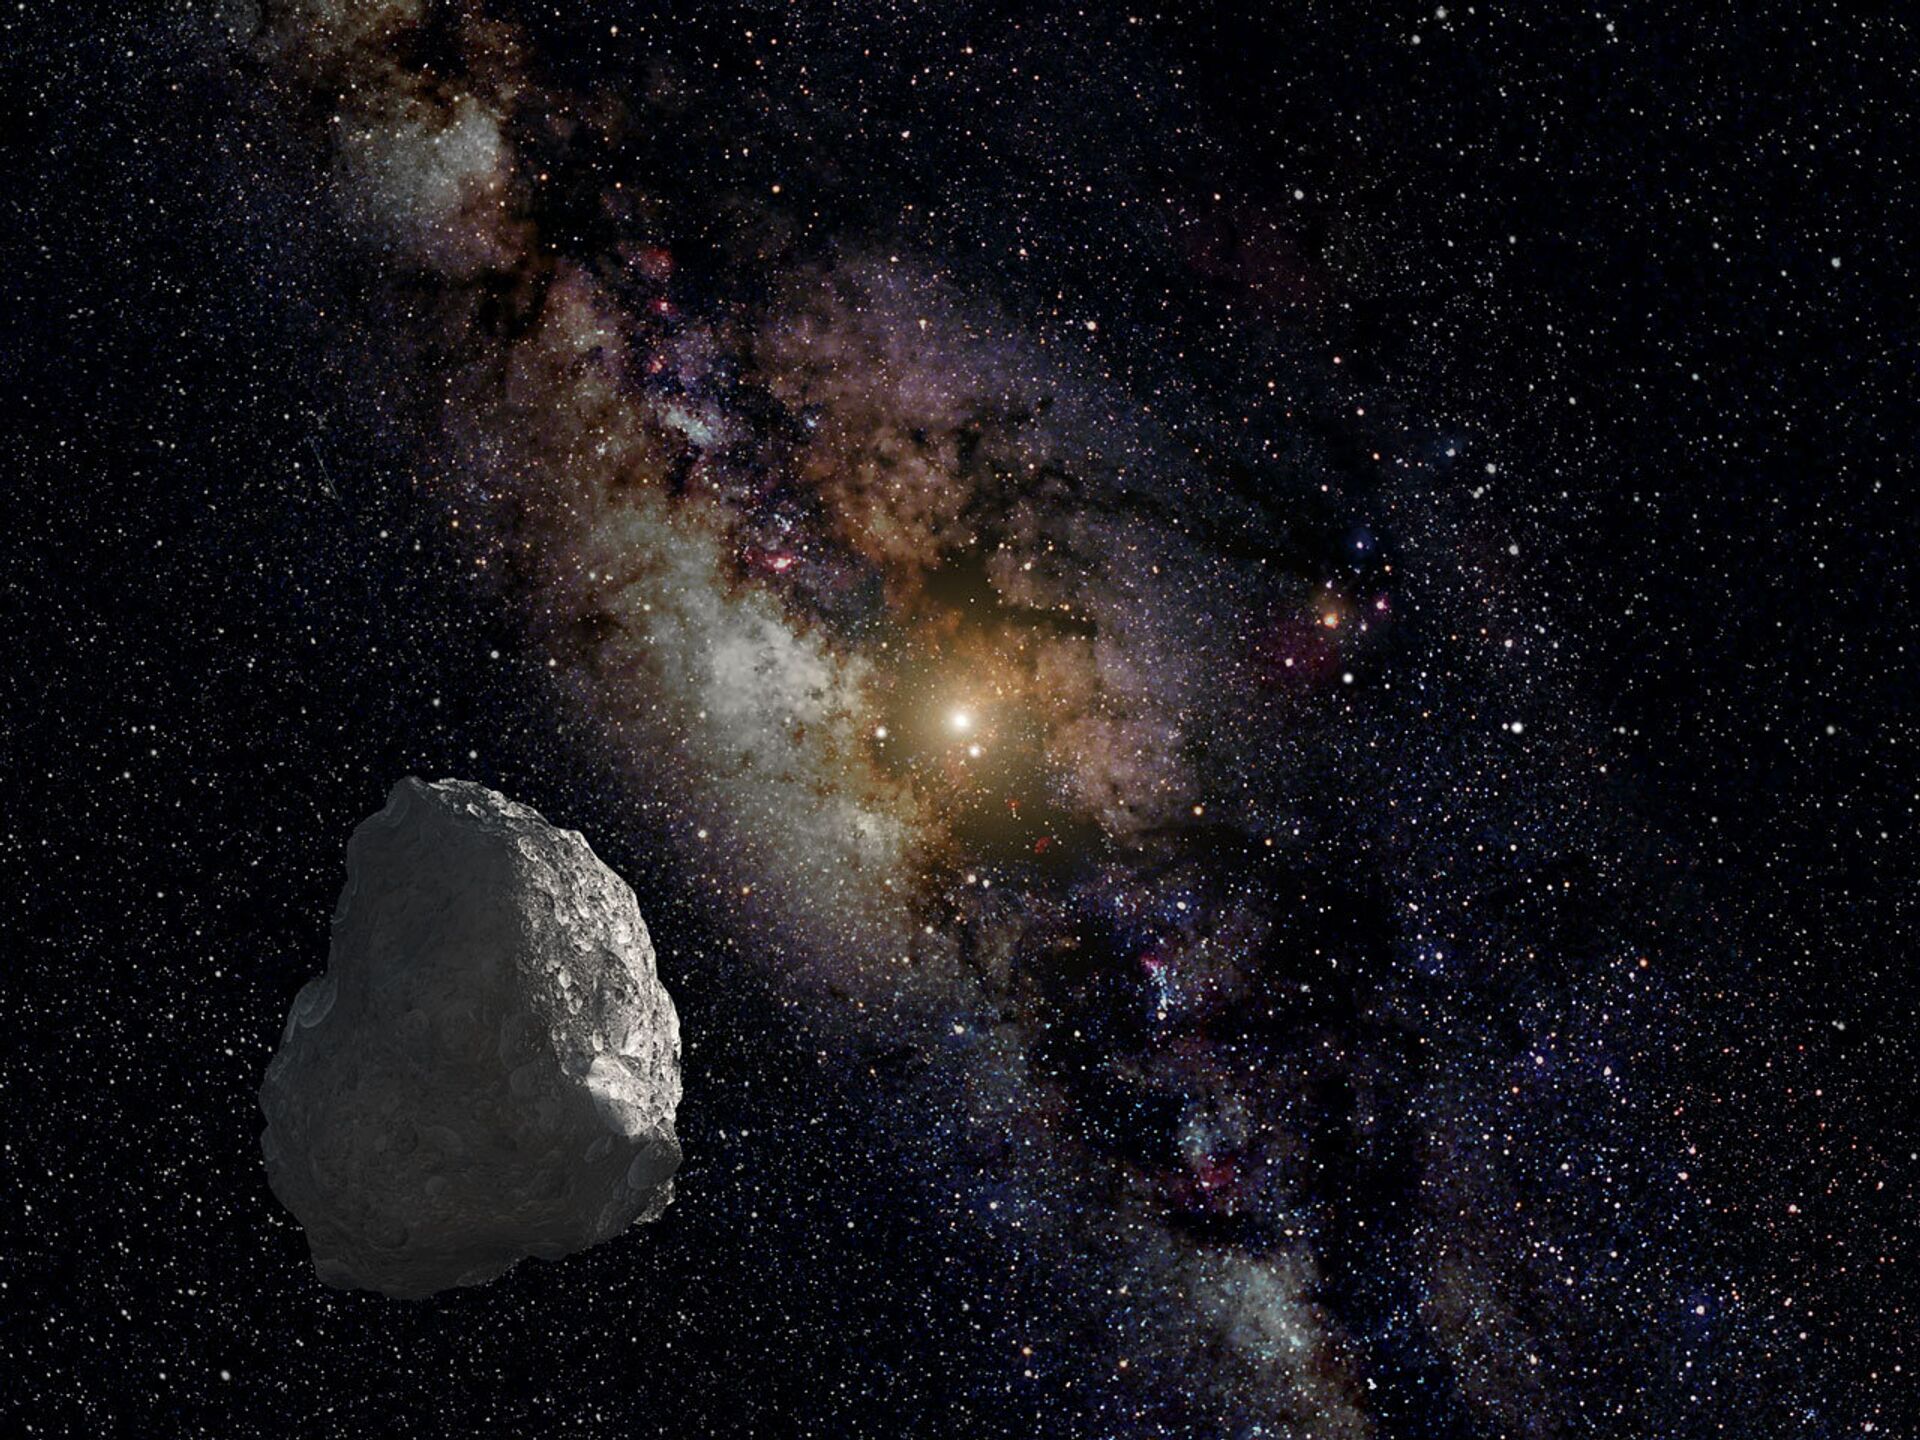 Fora do lugar: 2 rochas espaciais com matéria orgânica são encontradas longe do seu local de origem - Sputnik Brasil, 1920, 30.07.2021